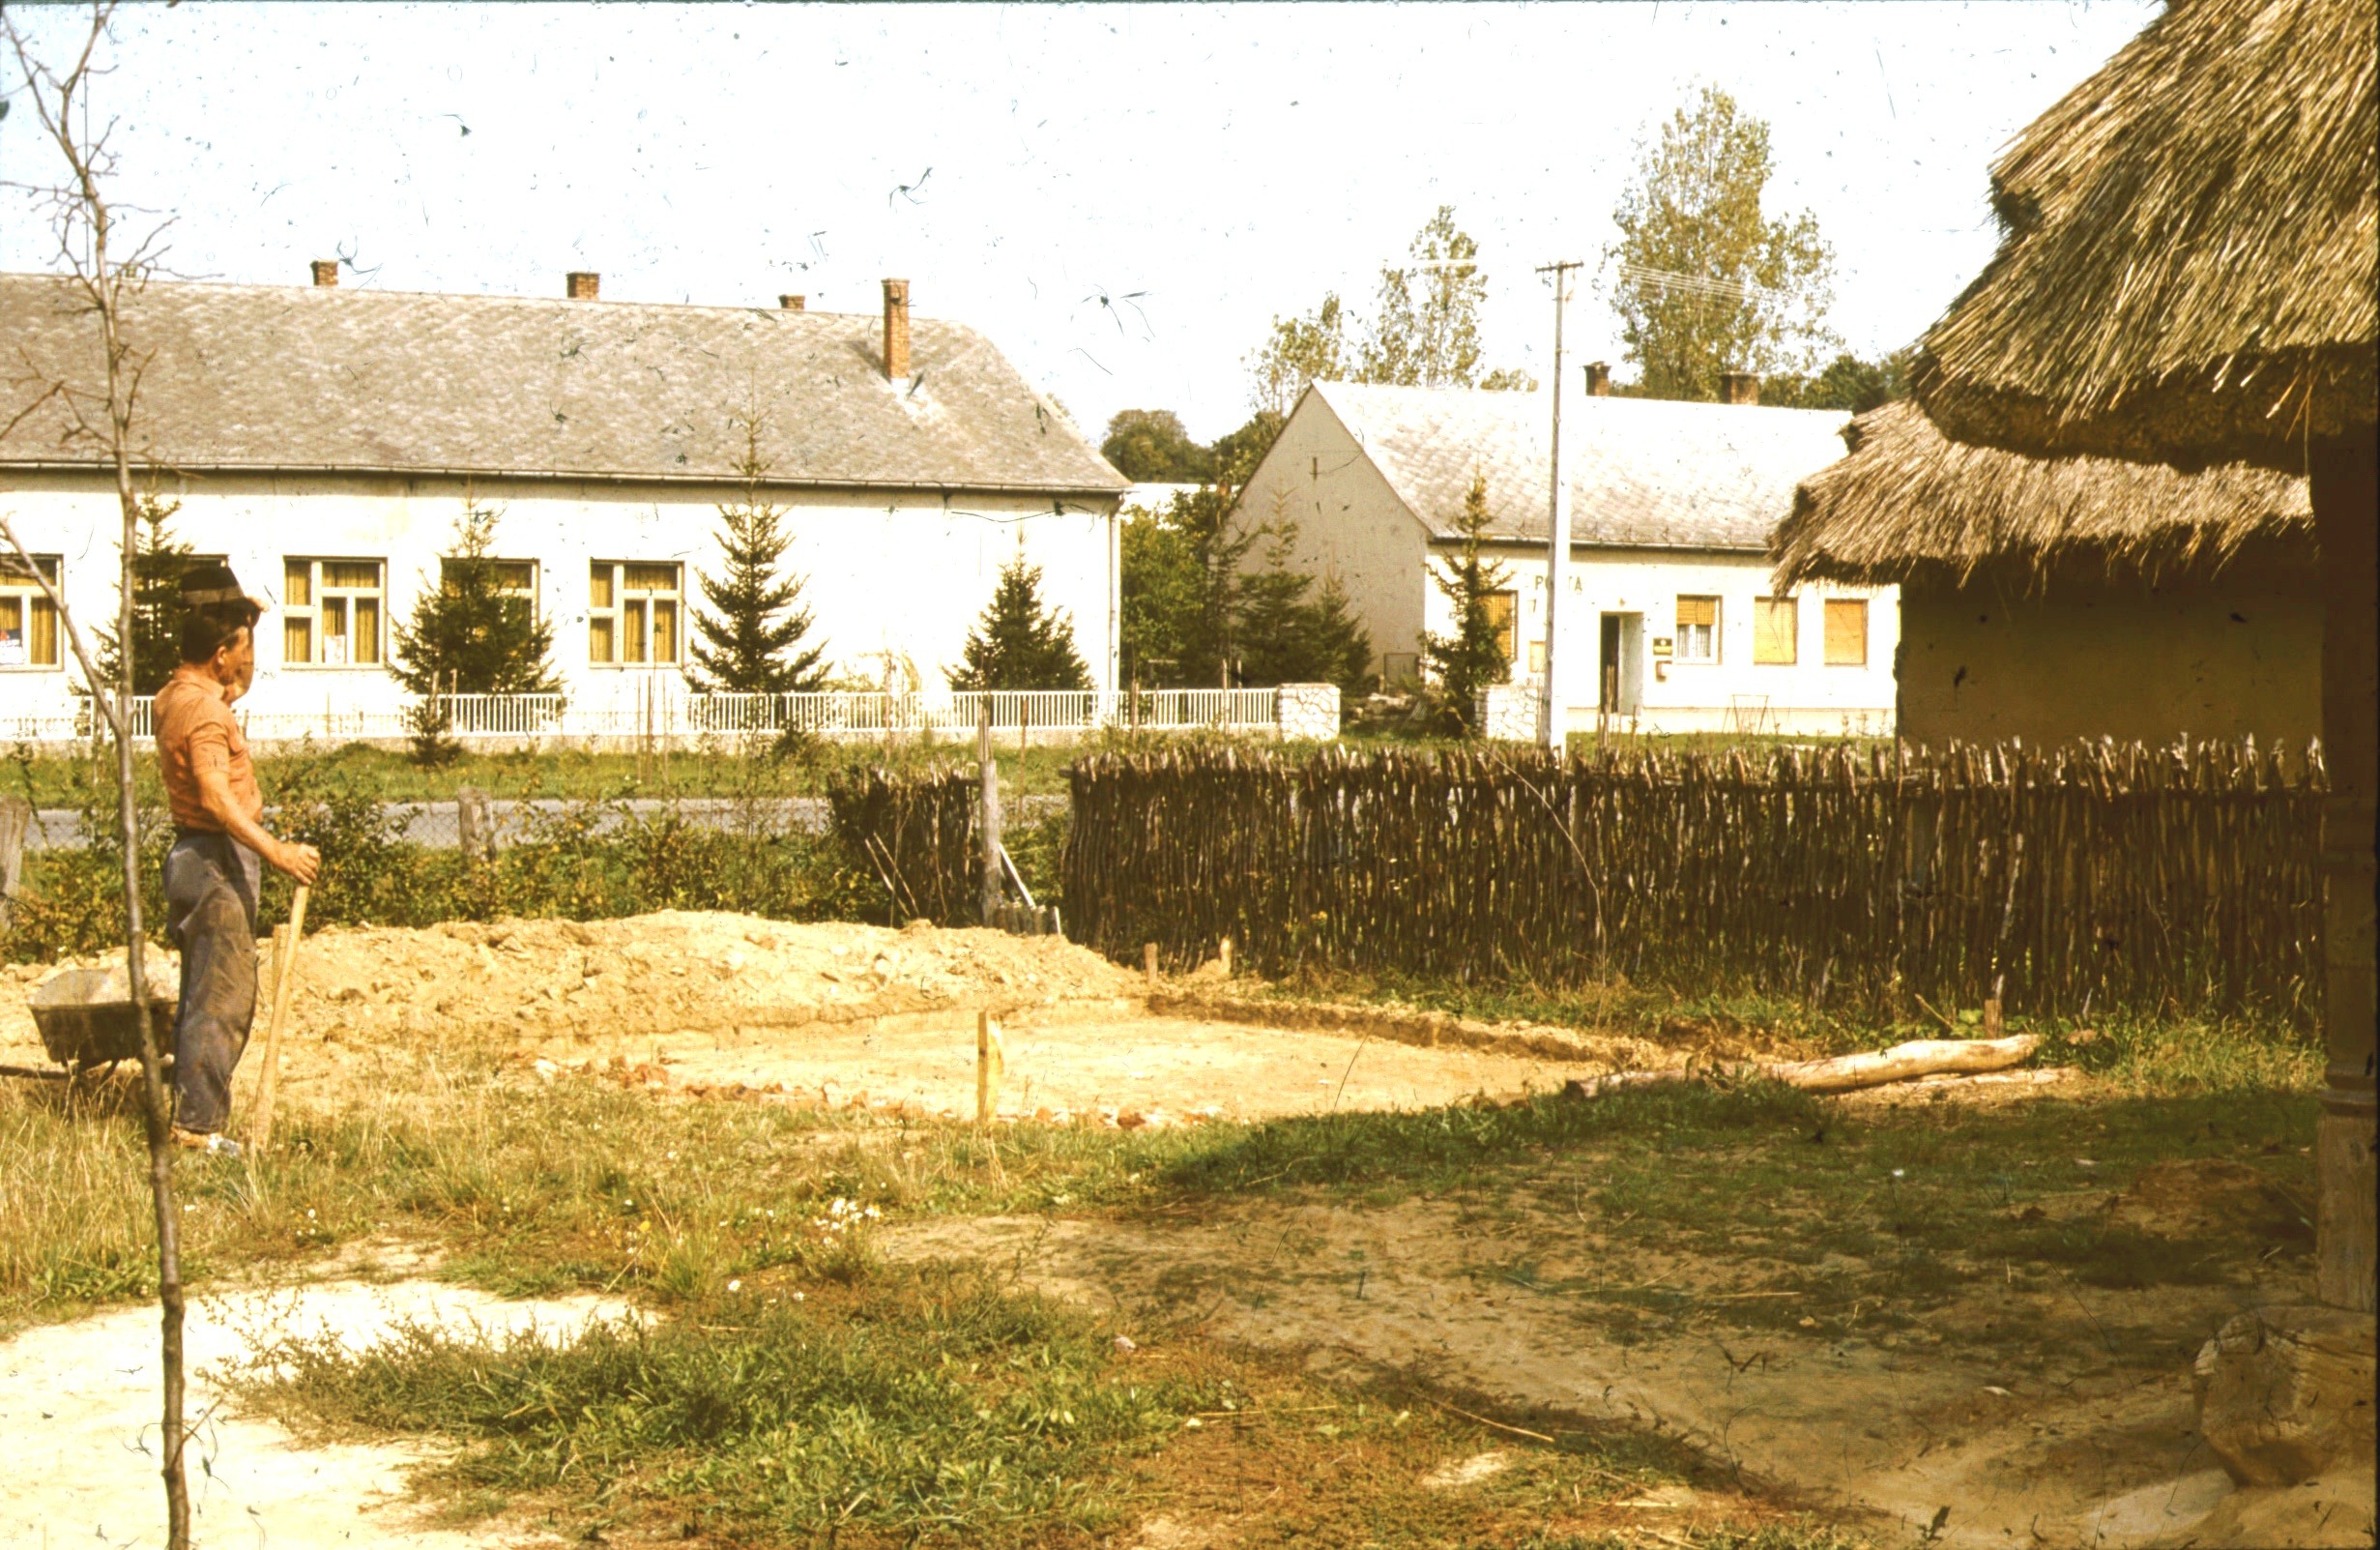 Készül a bodvicai istálló alapzása DNy-i nézet (Rippl-Rónai Múzeum RR-F)